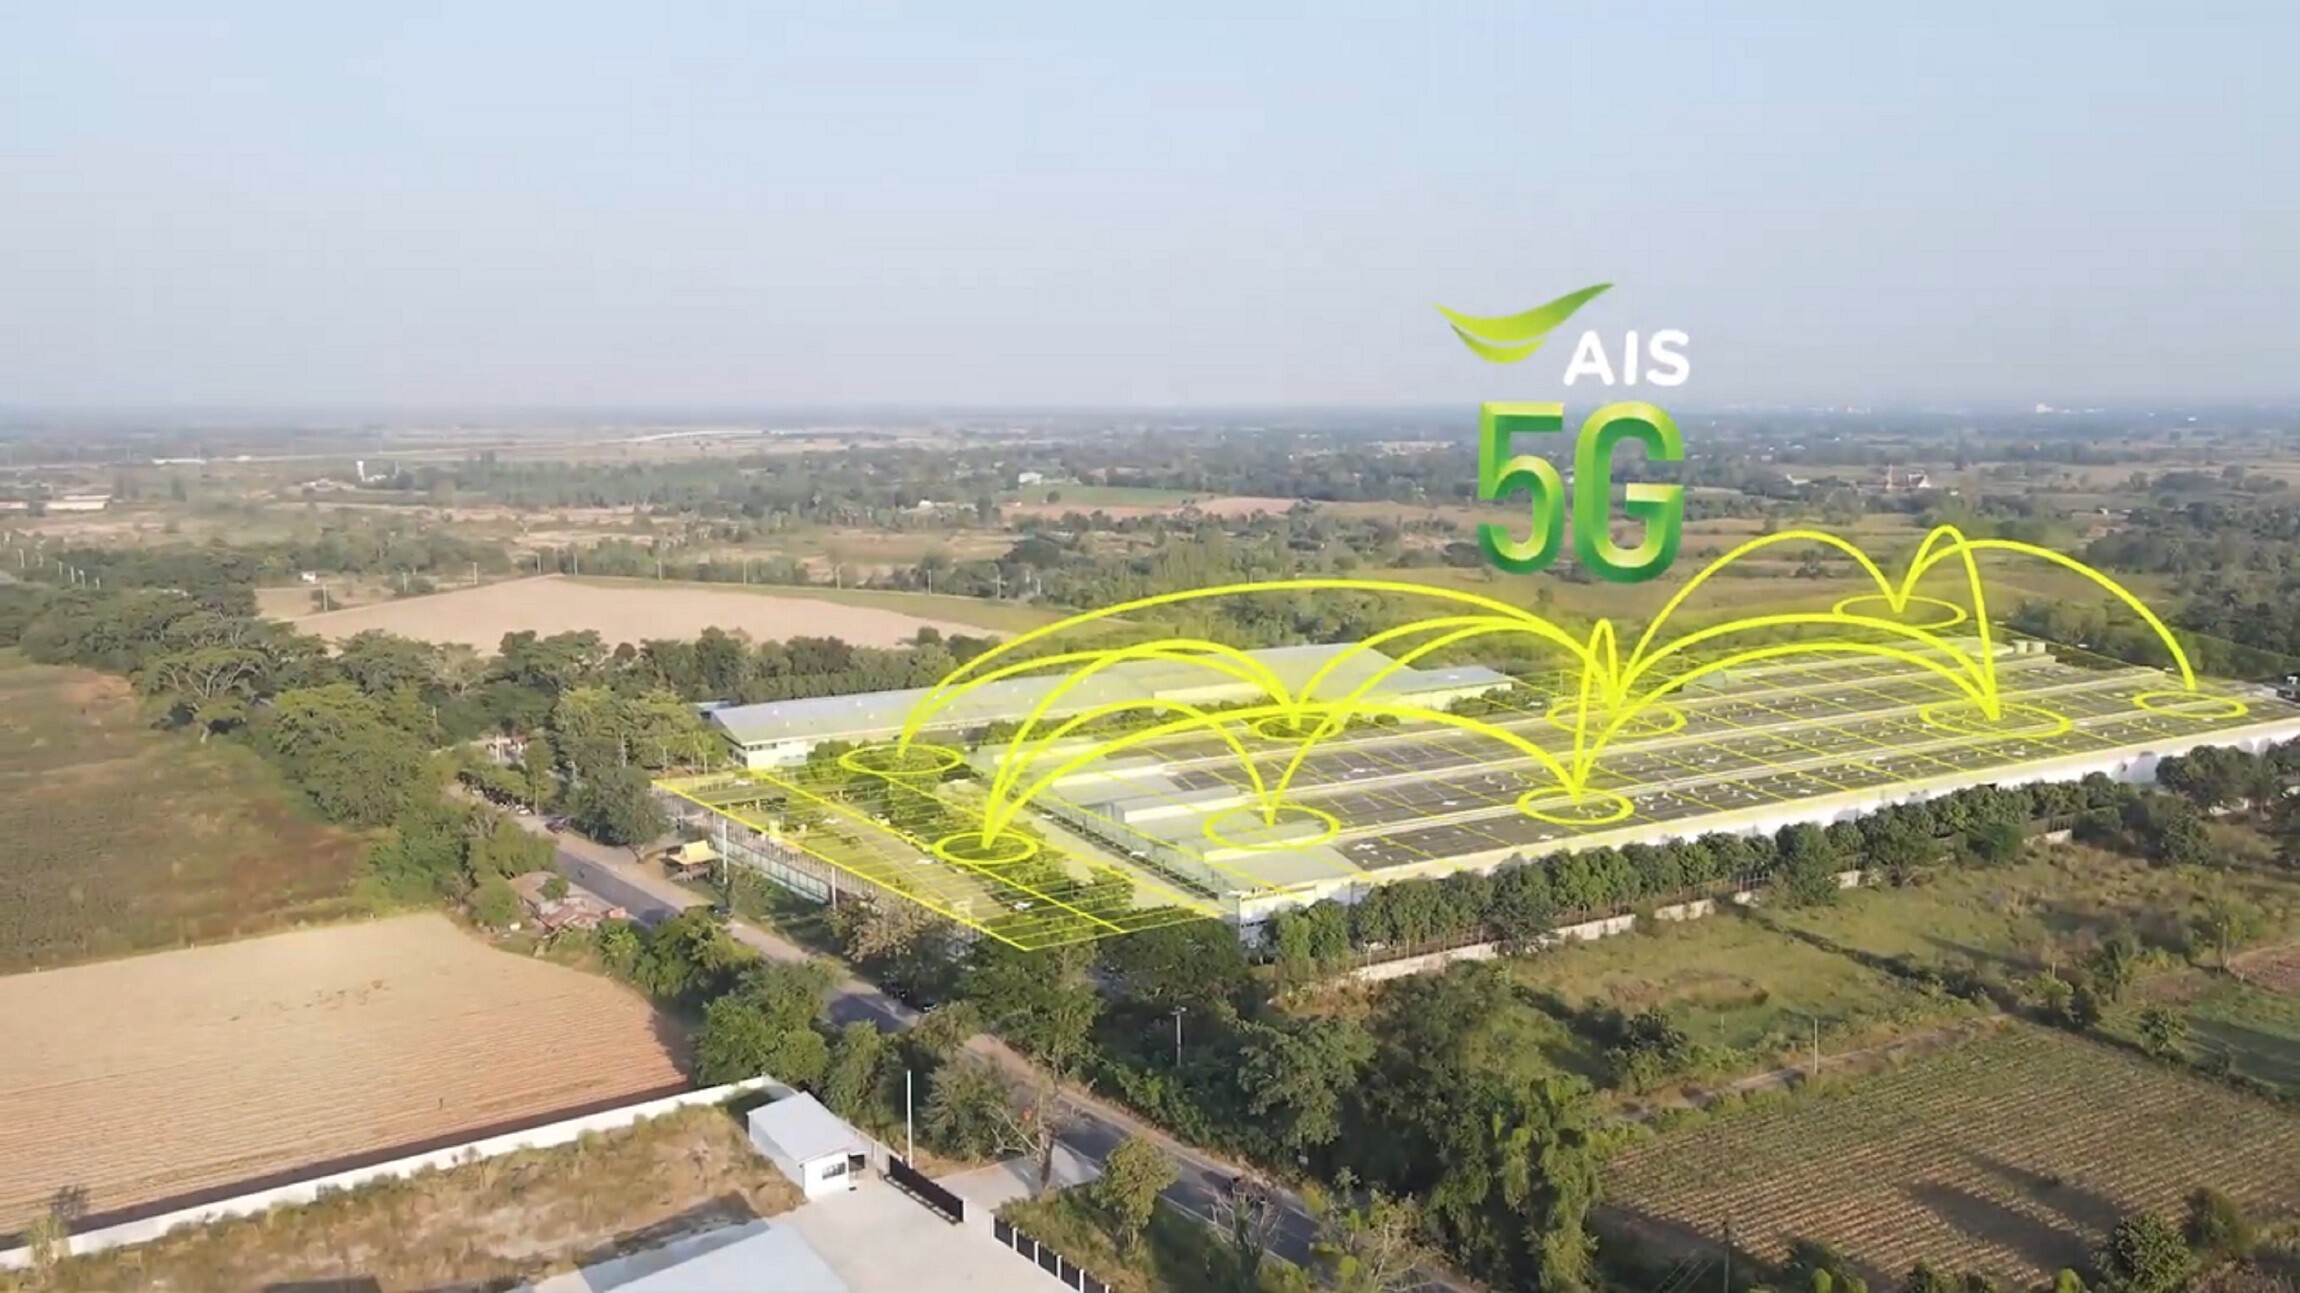 AIS 5G ผนึก สมาคมผู้ประกอบการระบบอัตโนมัติและหุ่นยนต์ไทย พร้อมพันธมิตร เลิศวิลัย แอนด์ ซันส์ - ยาวาต้า โชว์ศักยภาพโครงข่ายอัจฉริยะสู่ Smart Factory ใช้งานได้จริงแล้ววันนี้